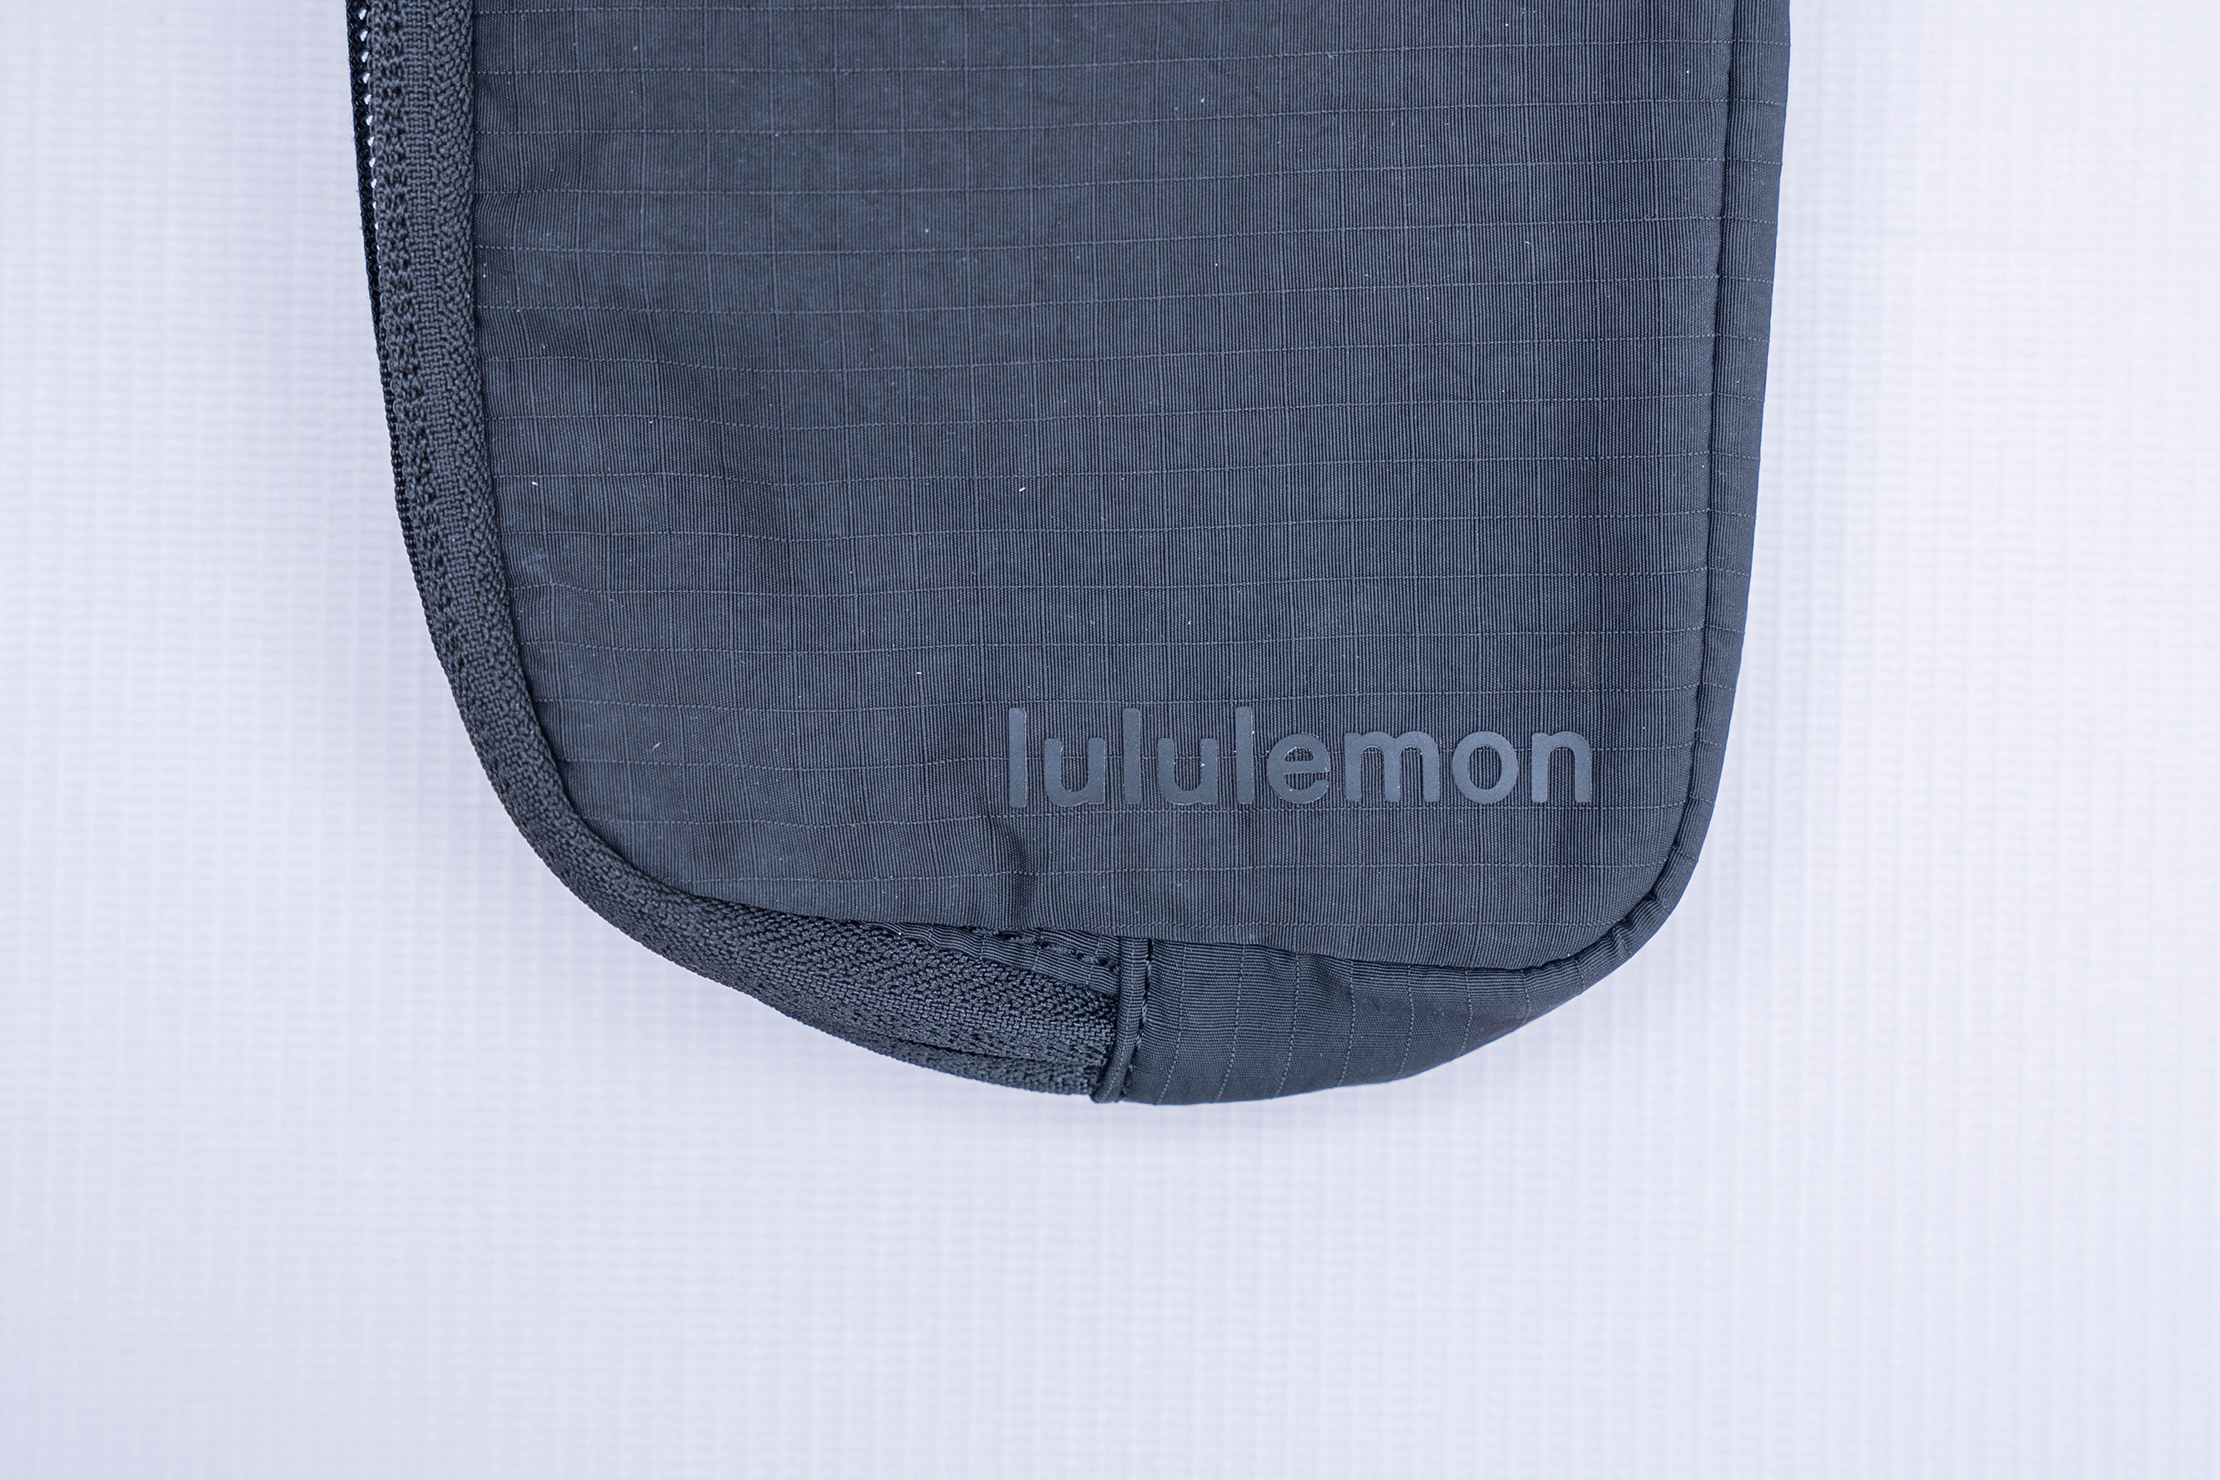 Lululemon Mini Belt Bag - Khaki/Trench/Nomad